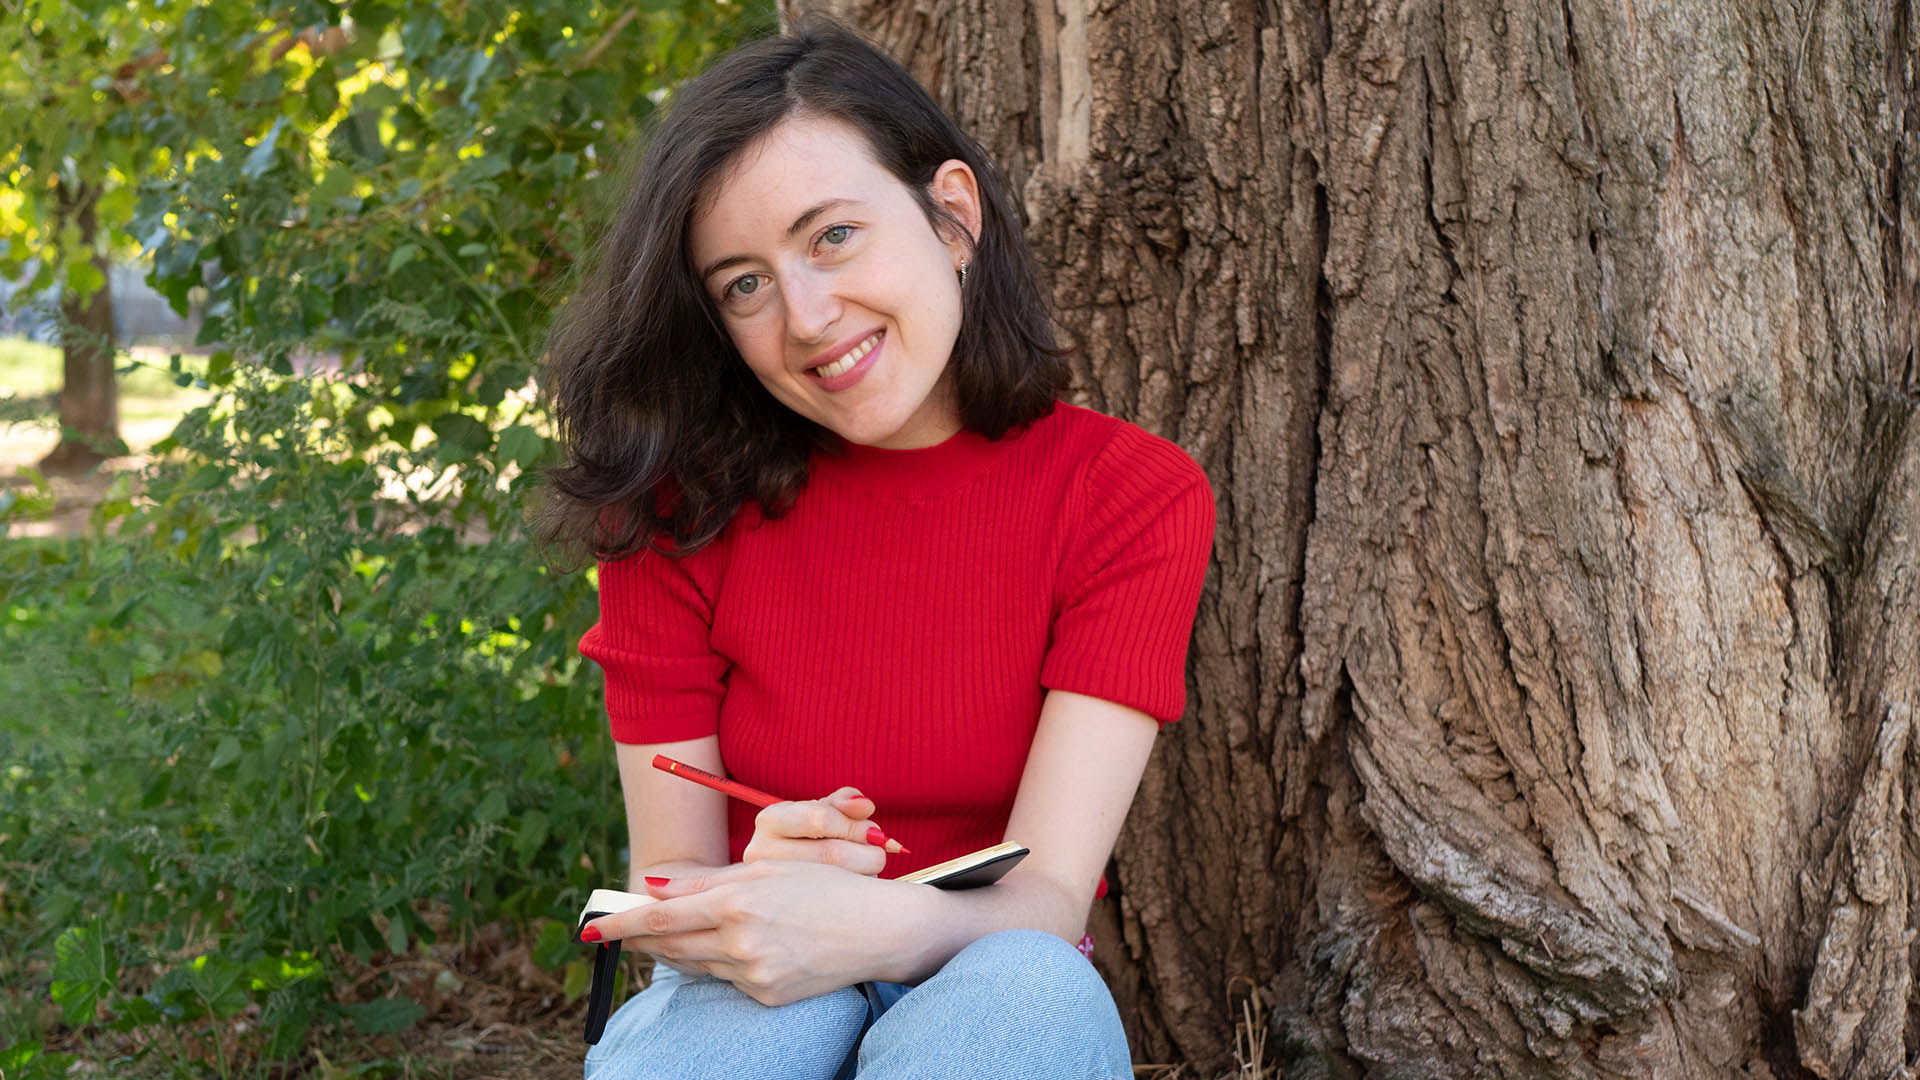 Une photo de moi-même, assise près d'un arbre et dessinant, pour illustrer mon article "Comment retrouver la motivation et l'envie de créer"